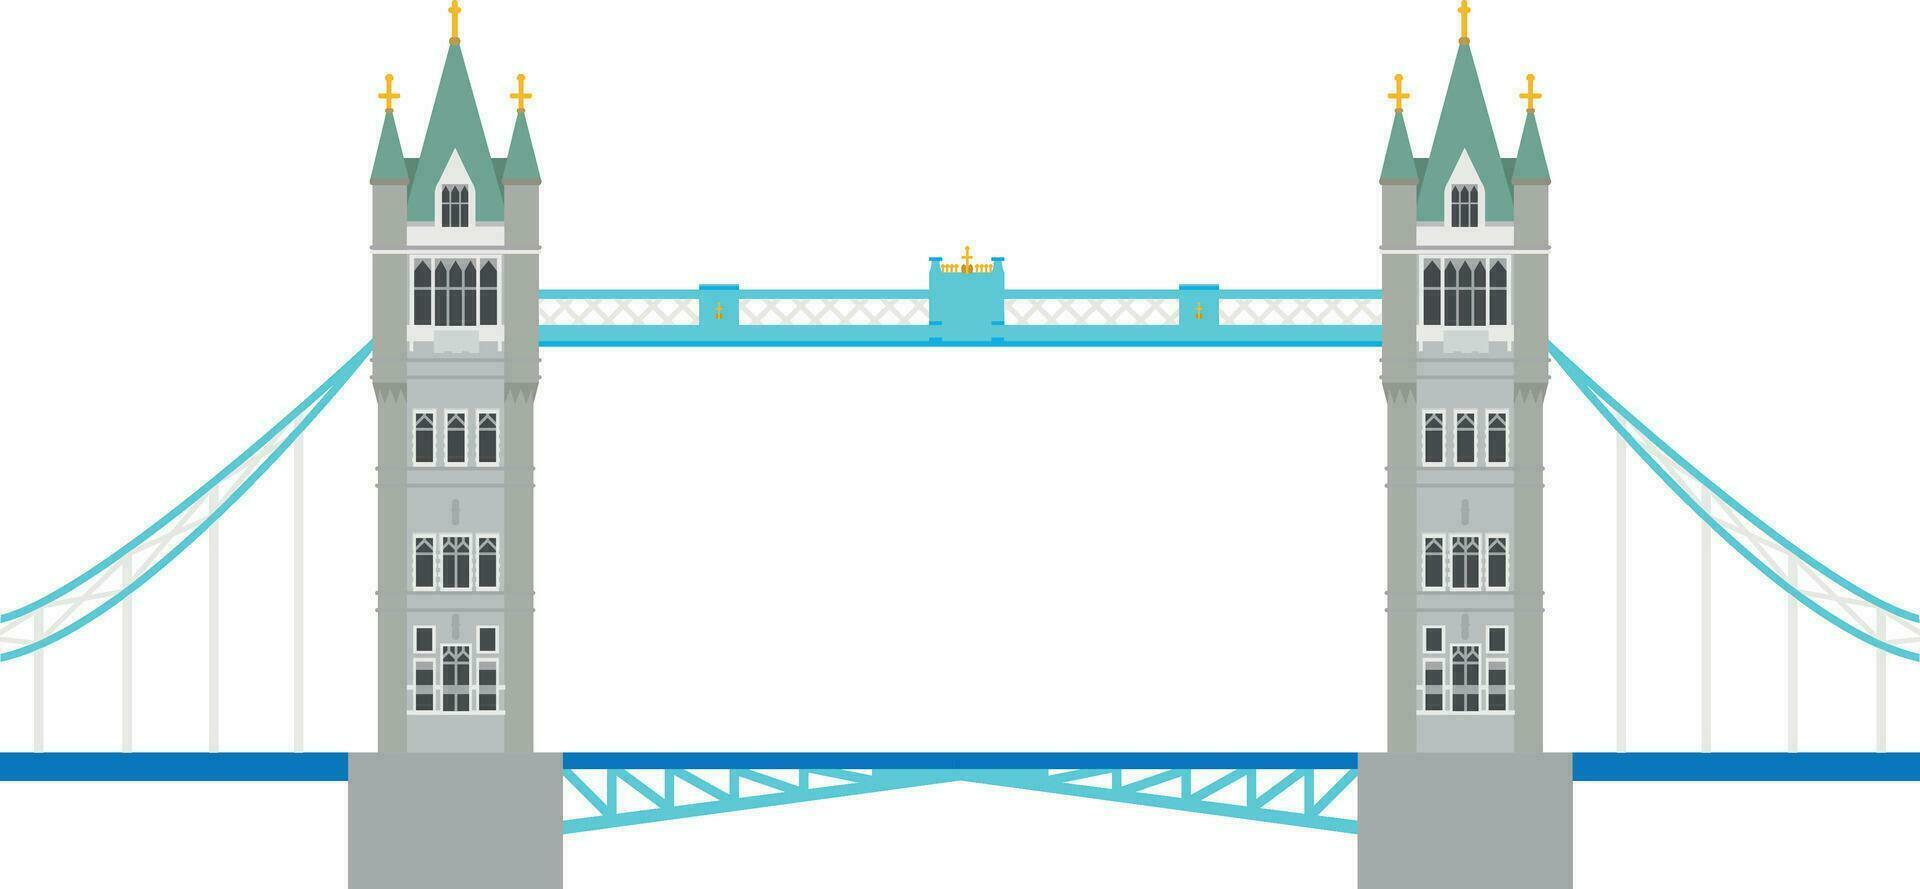 Tower Bridge, London, UK. Isolated on white background vector illustration.